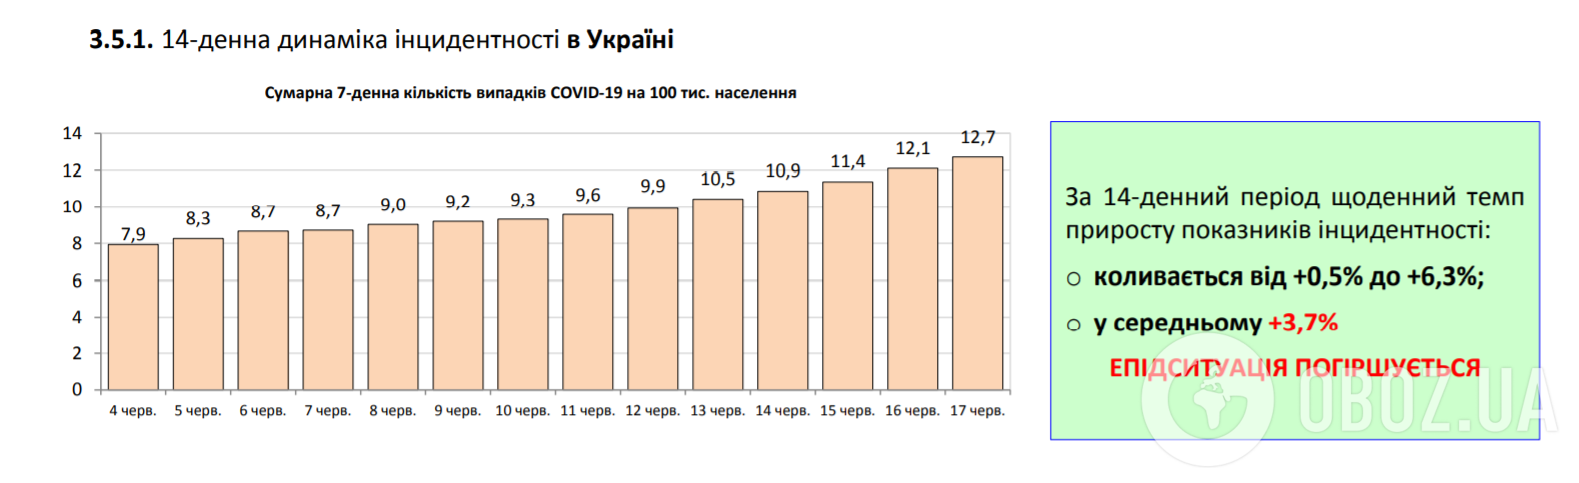 Статистика COVID-19 в Україні